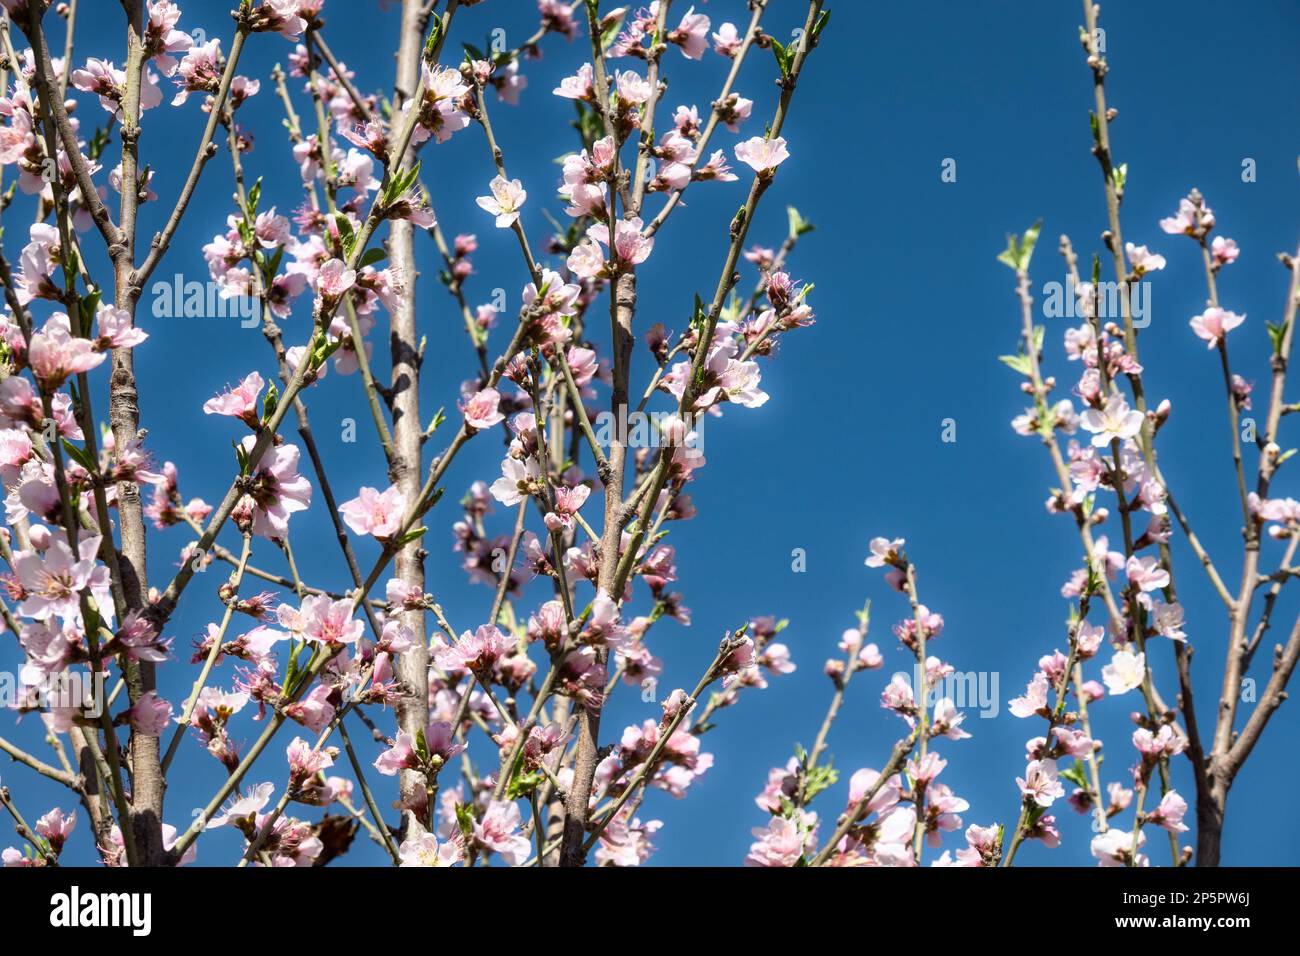 Une floraison printanière de fleurs sur un arbre, des fleurs blanches sur fond bleu ciel Banque D'Images